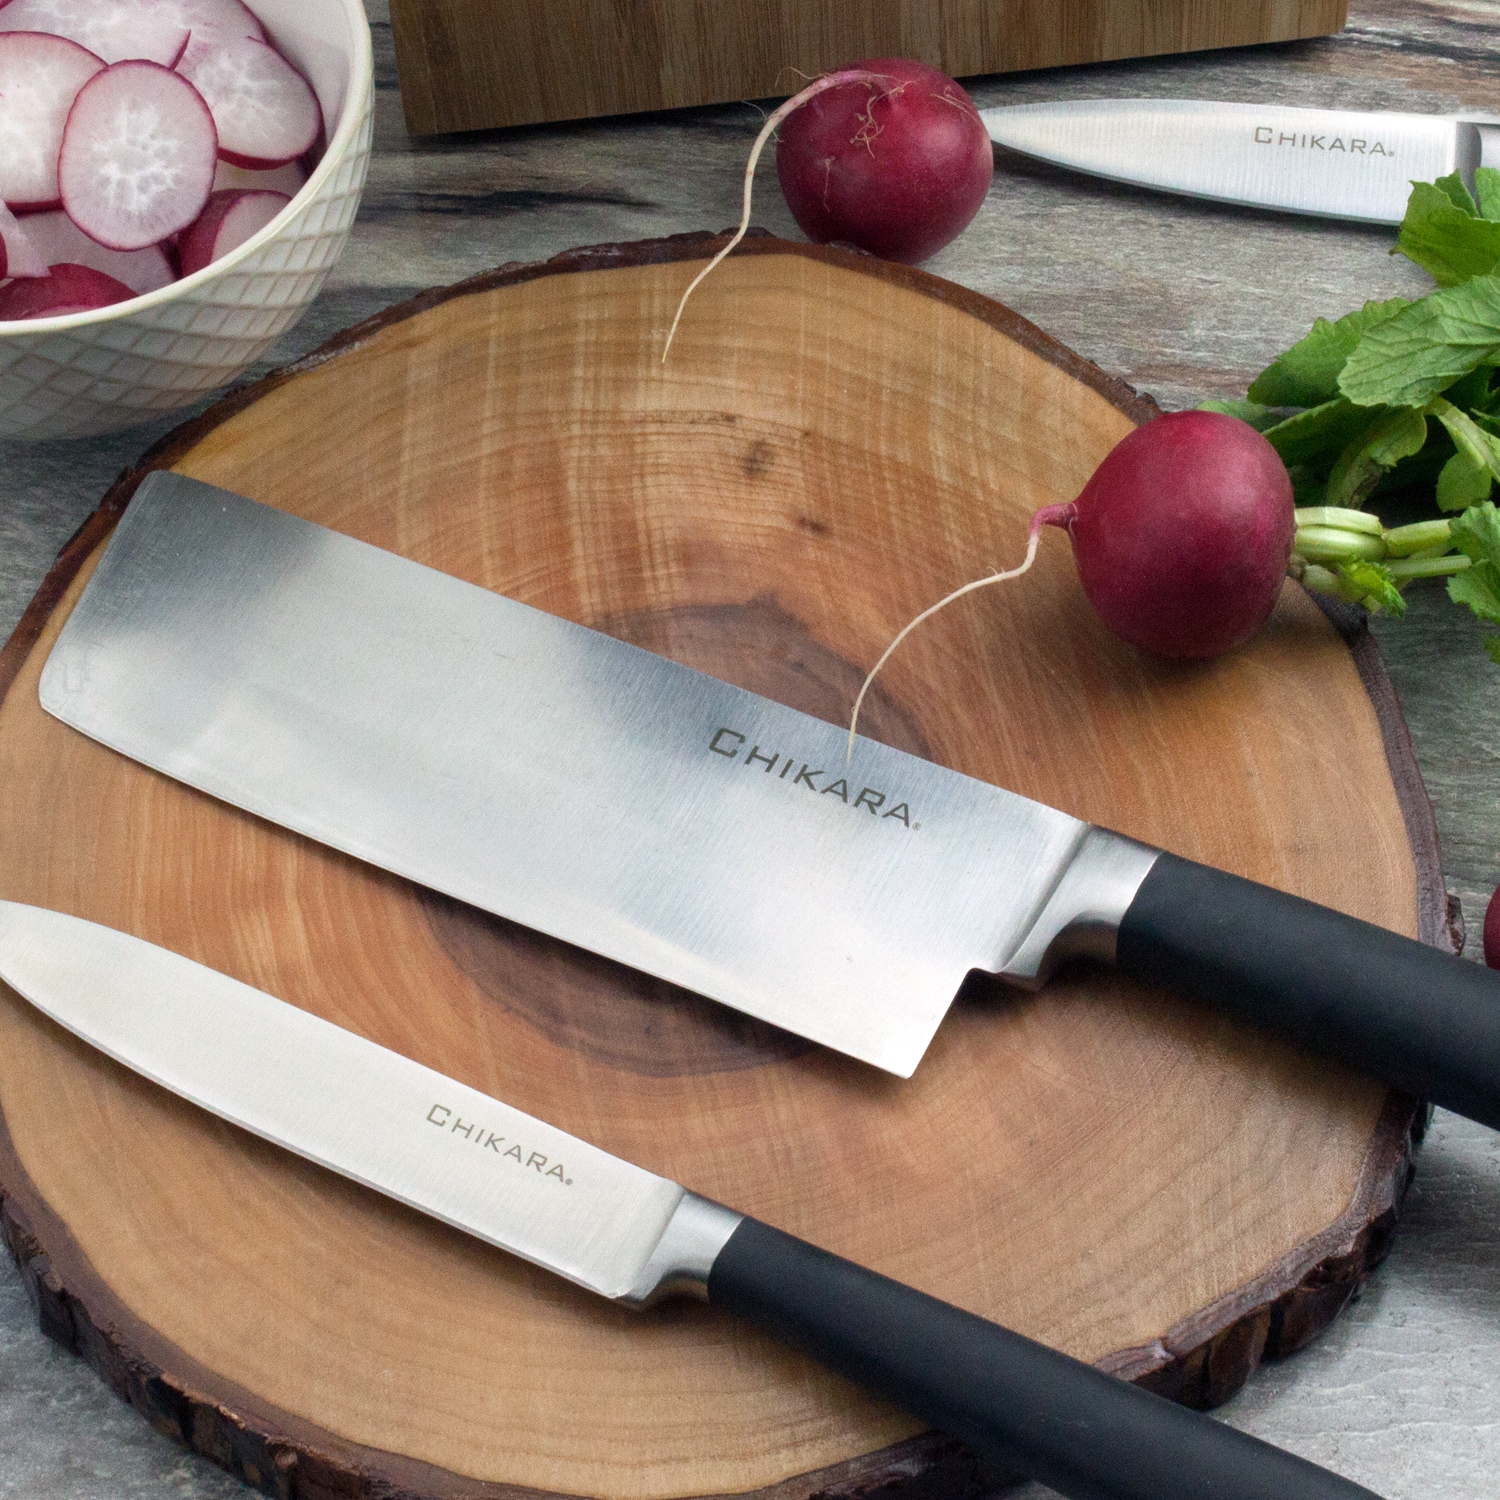 Ginsu Gourmet Chikara Series Forged 19-Piece Japanese Steel Knife